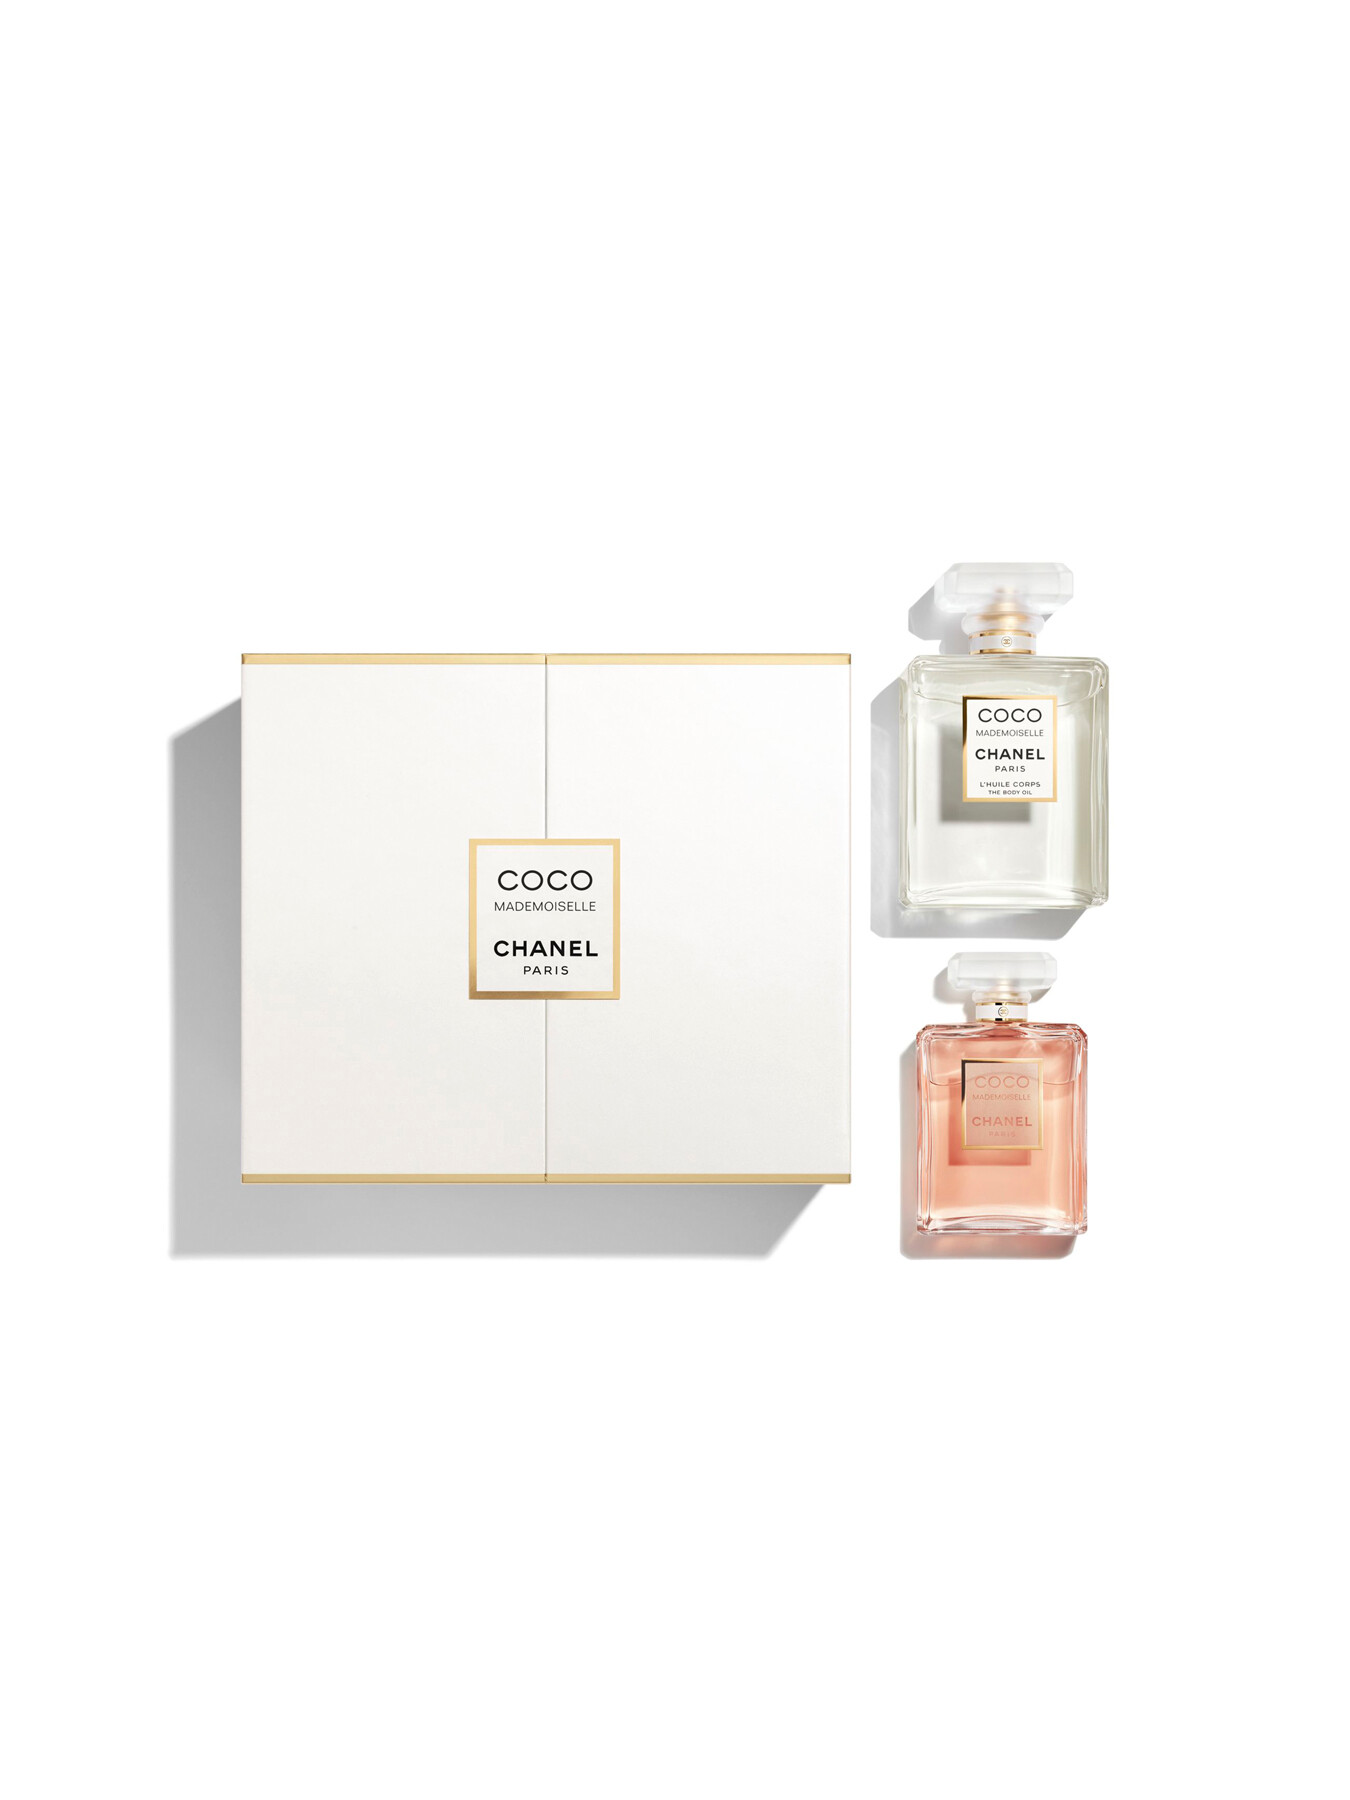 CHANEL COCO MADEMOISELLE Eau De Parfum Spray 35ml £55.00 - PicClick UK